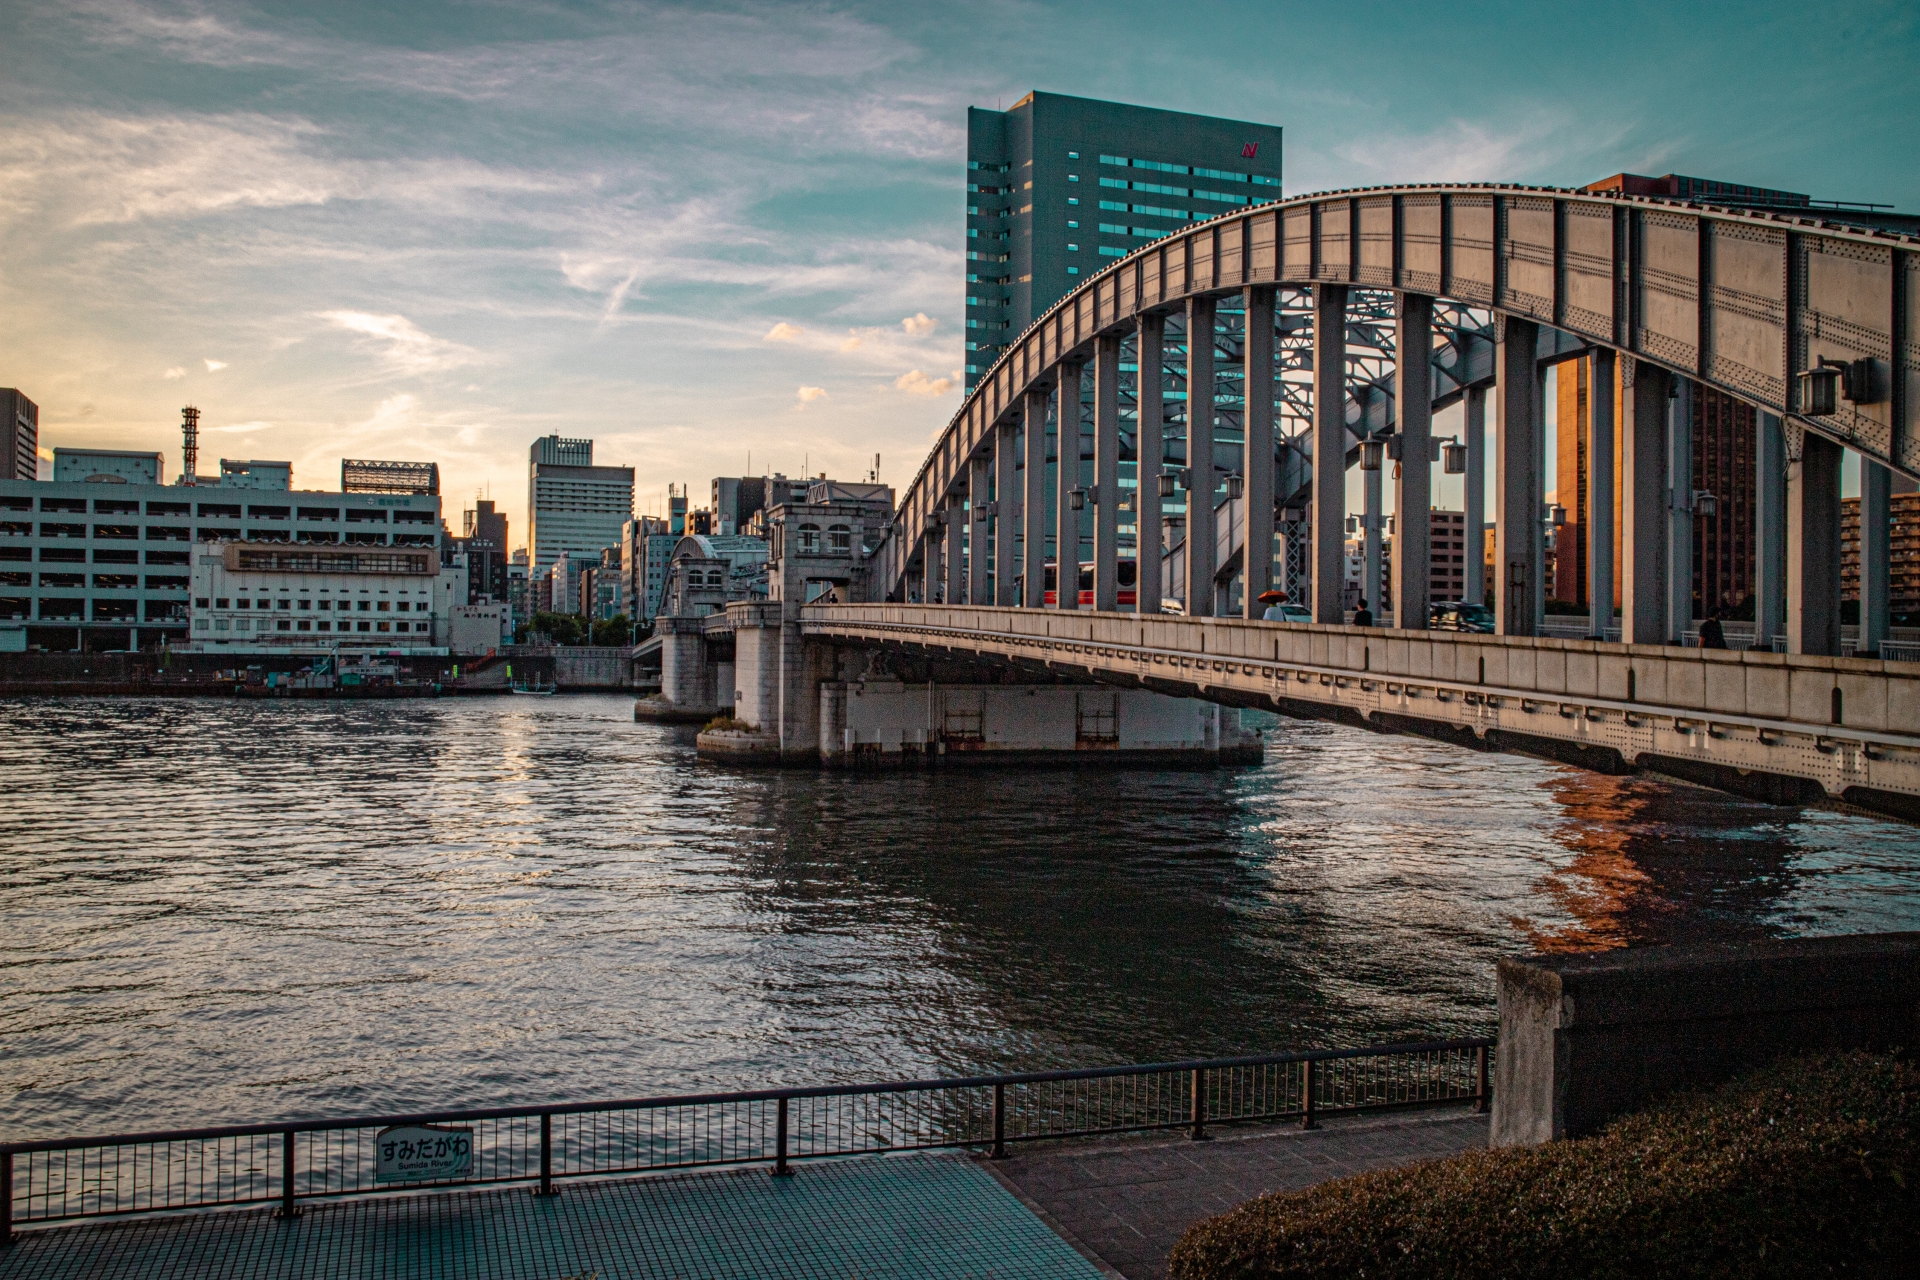 タワマンが集中する、東京のベイエリア。港区、中央区、品川区、江東区の4区には200棟以上の物件が建っている。画像は中央区勝どきの勝鬨橋。